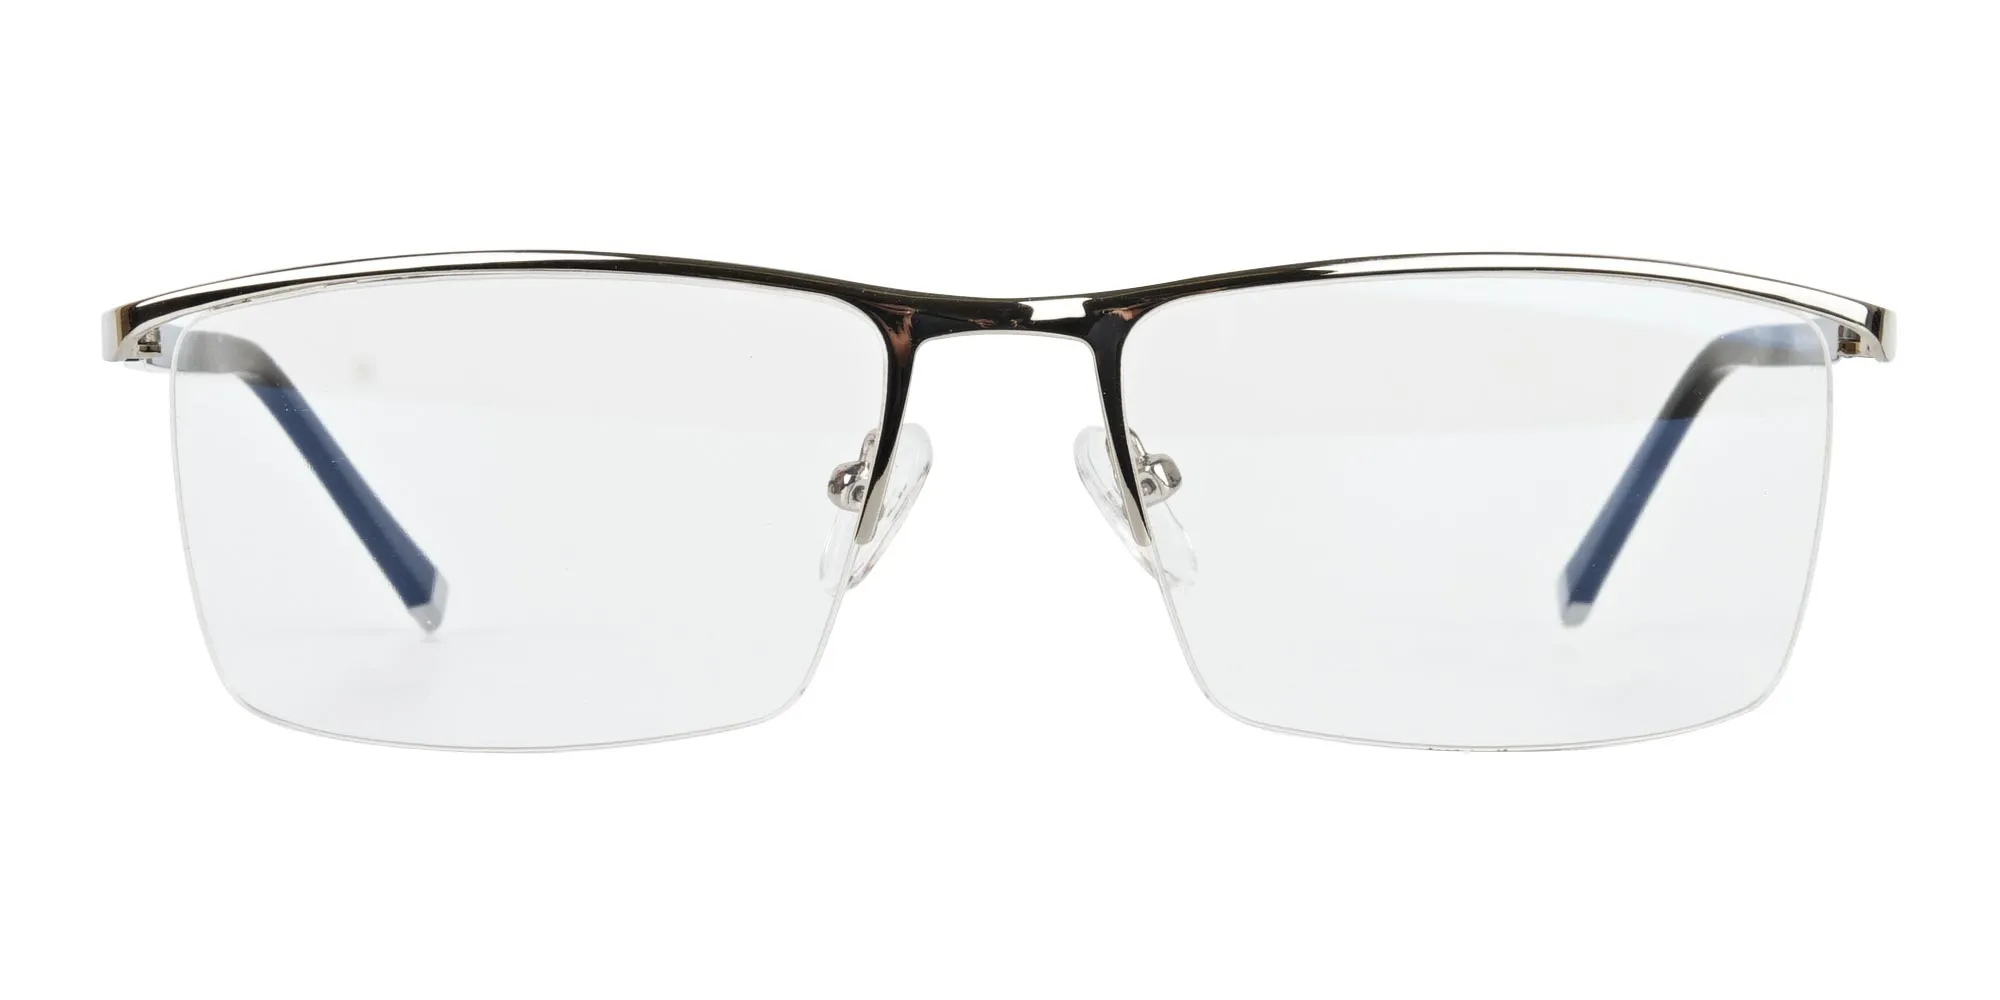 Silver and Black Semi-Rim Glasses-2